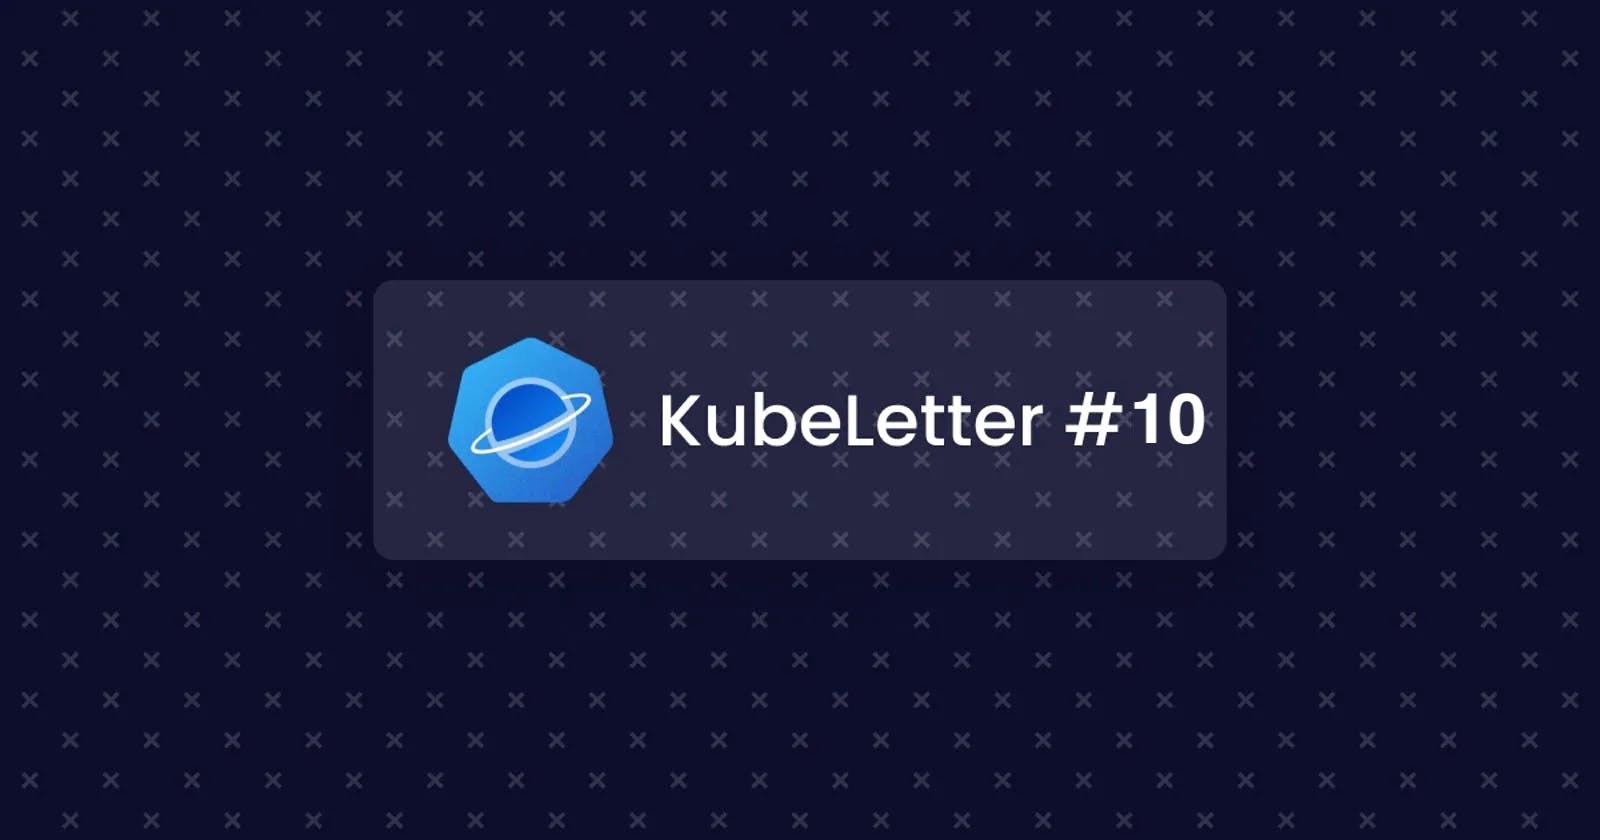 KubeLetter #10